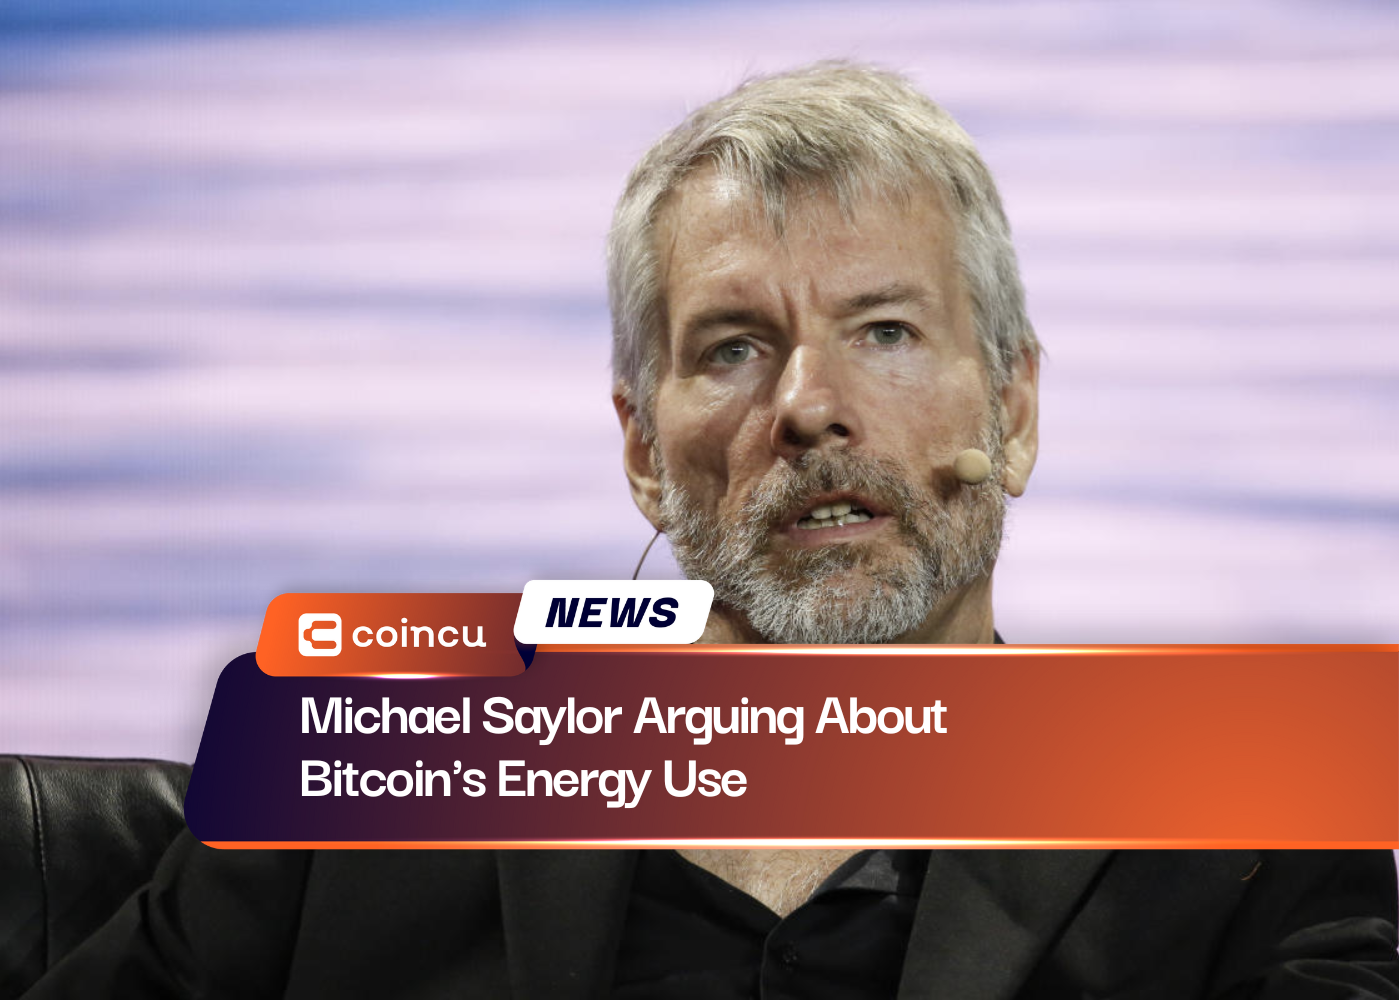 Michael Saylor discutiendo sobre el uso de energía de Bitcoin